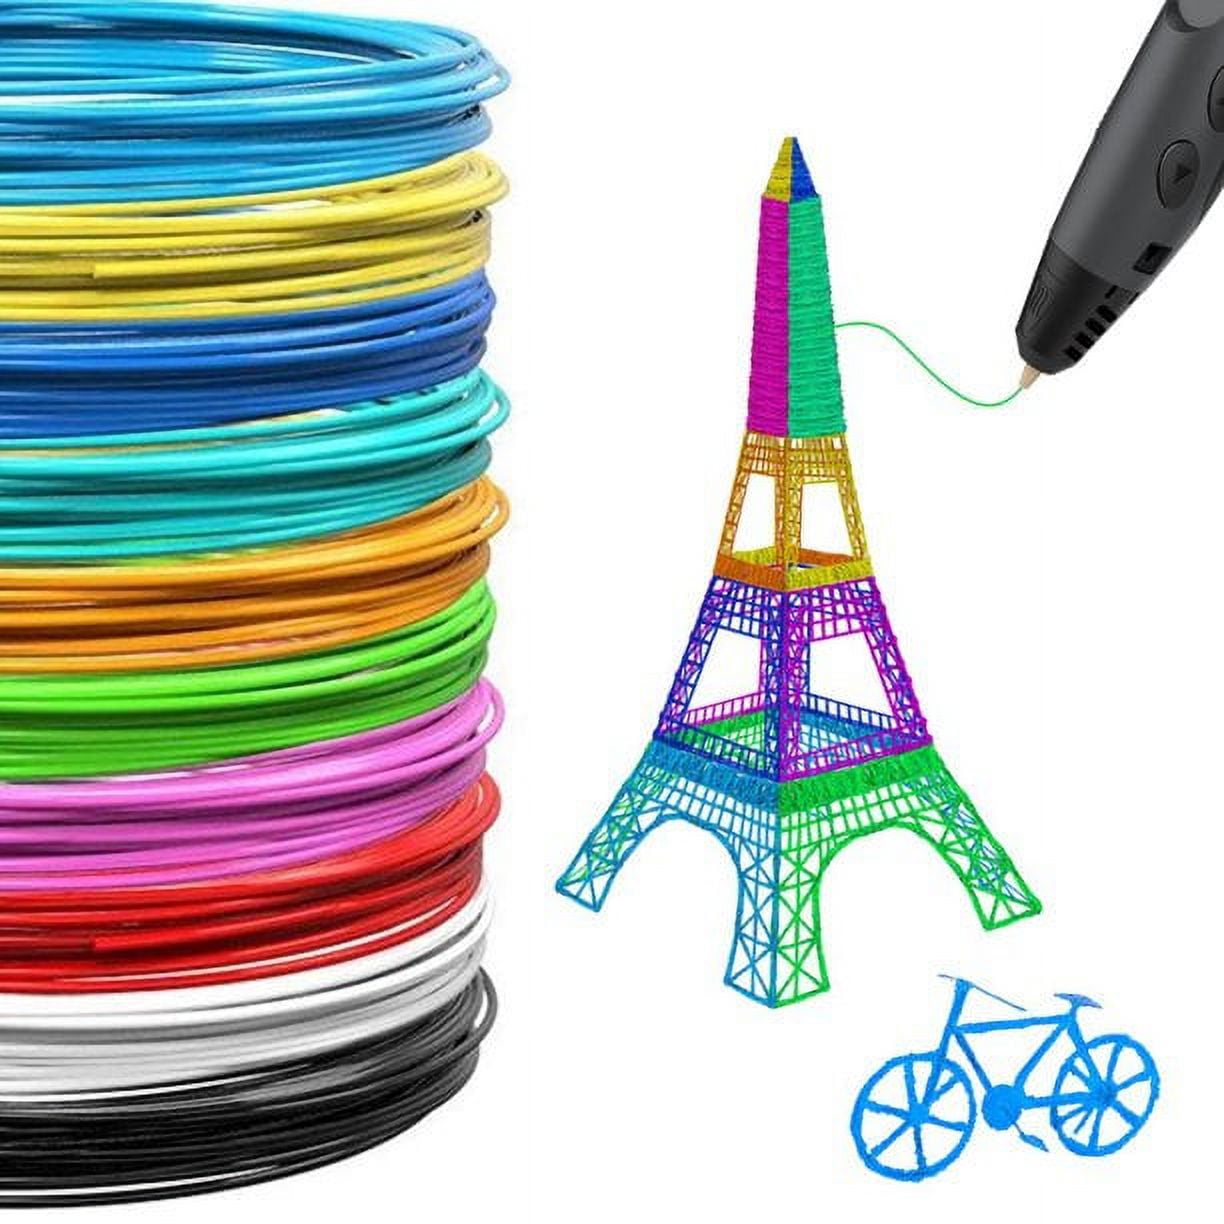 PLA PCL 3D Pen Printer Filament,3D Pen Filament Refills,1.75mm Diameter 3D  Printing Accerssories Gift for Drawing 